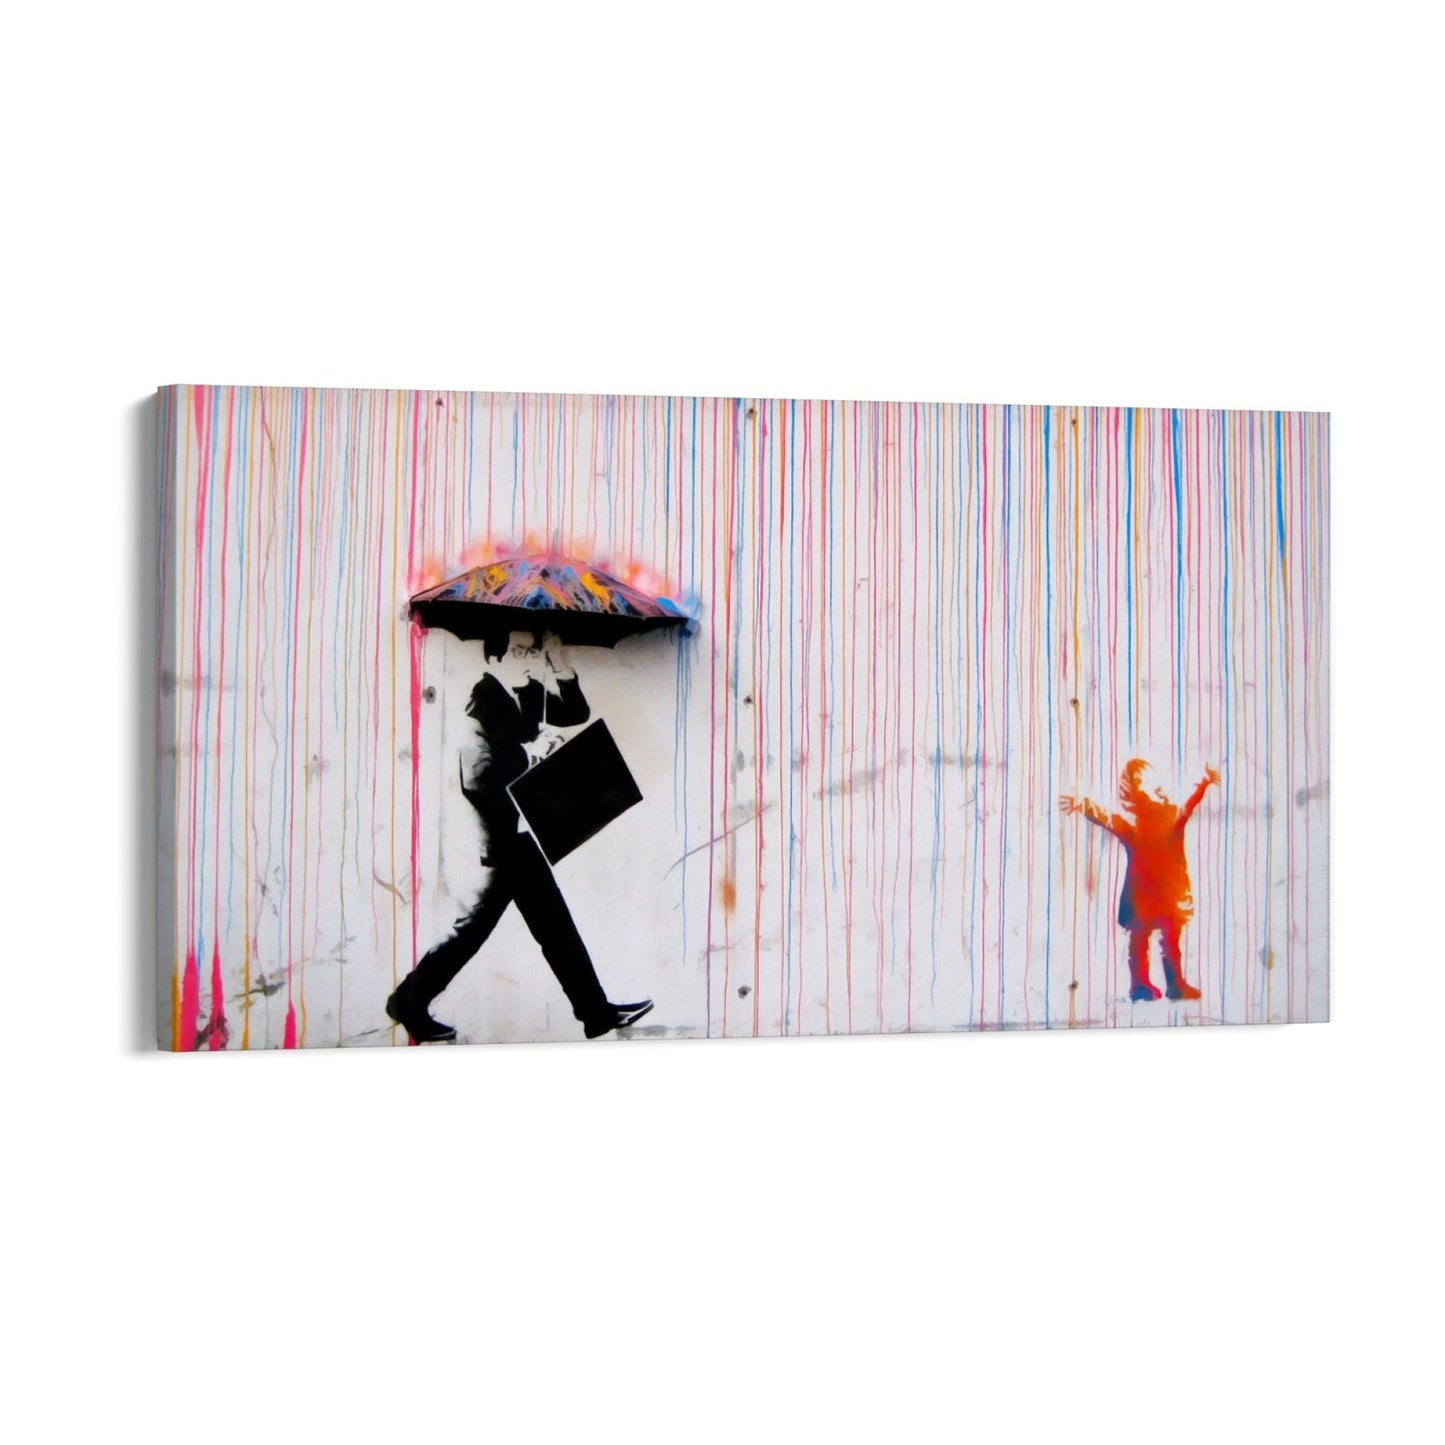 Kolorowy deszcz, Banksy